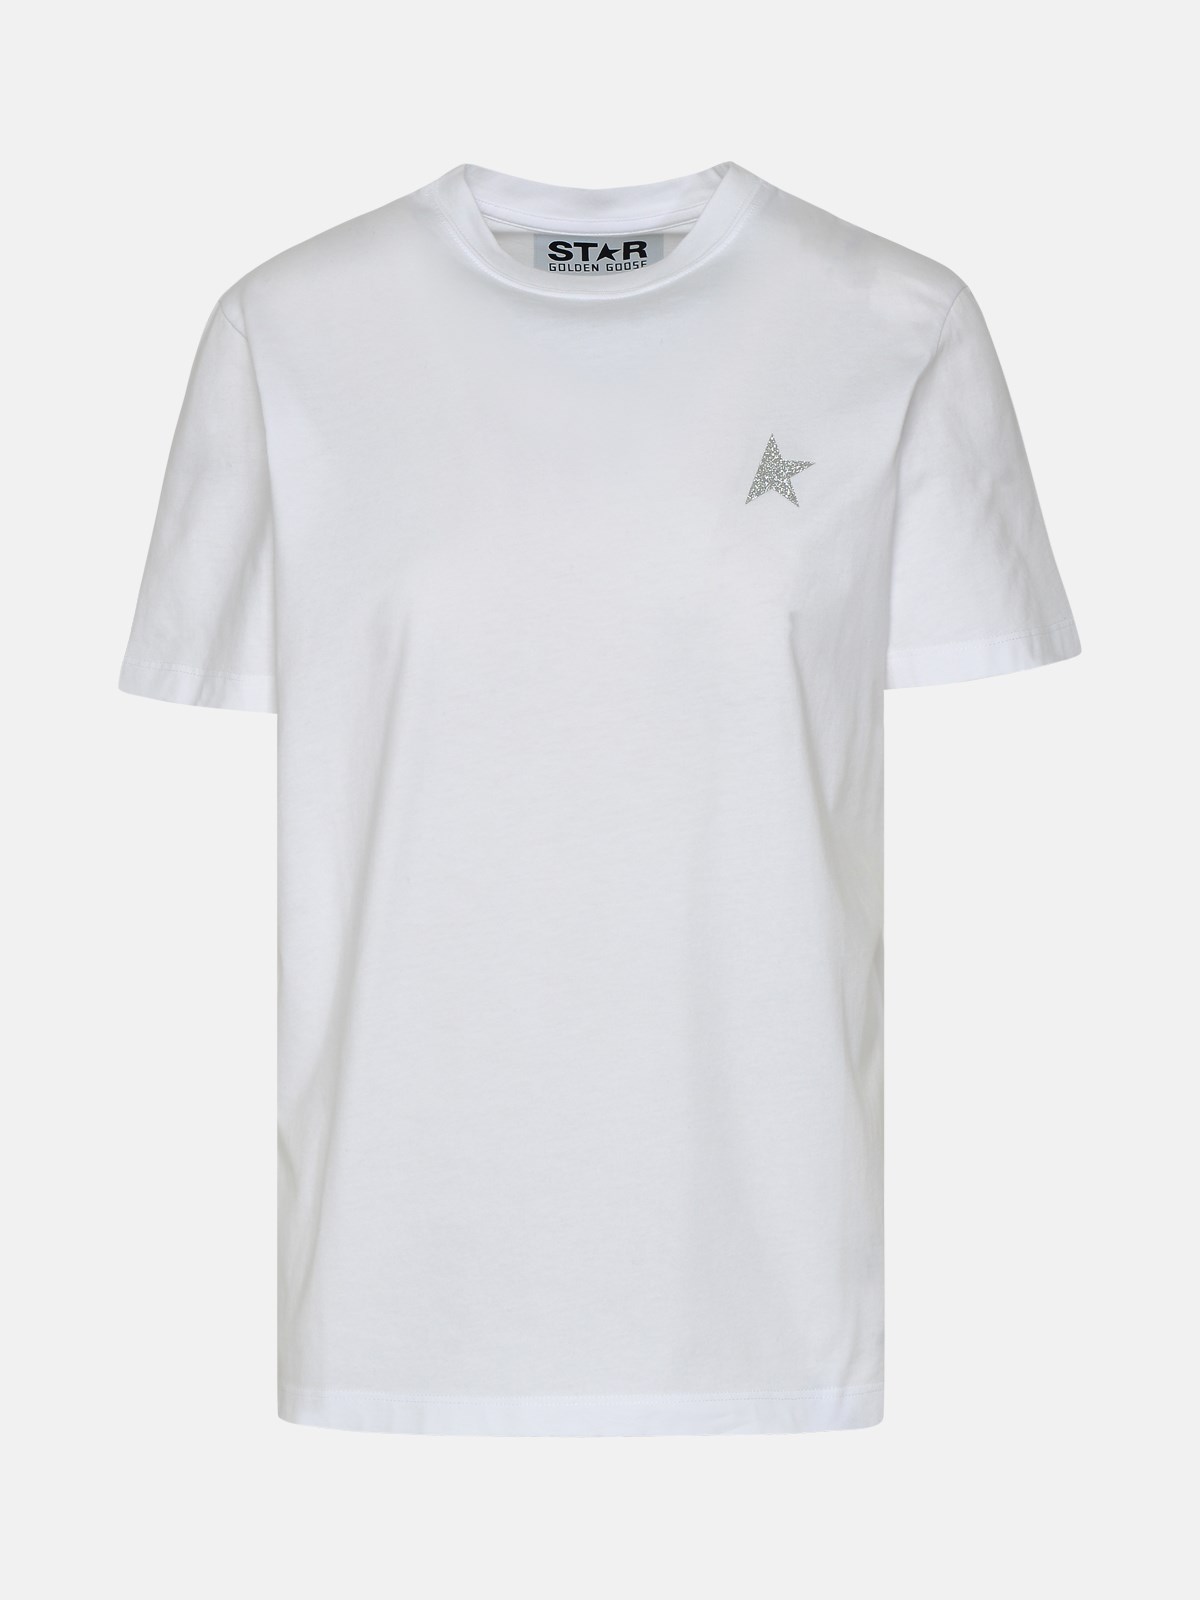 Golden Goose Kids' T-shirt Star Mini Logo Argento In White